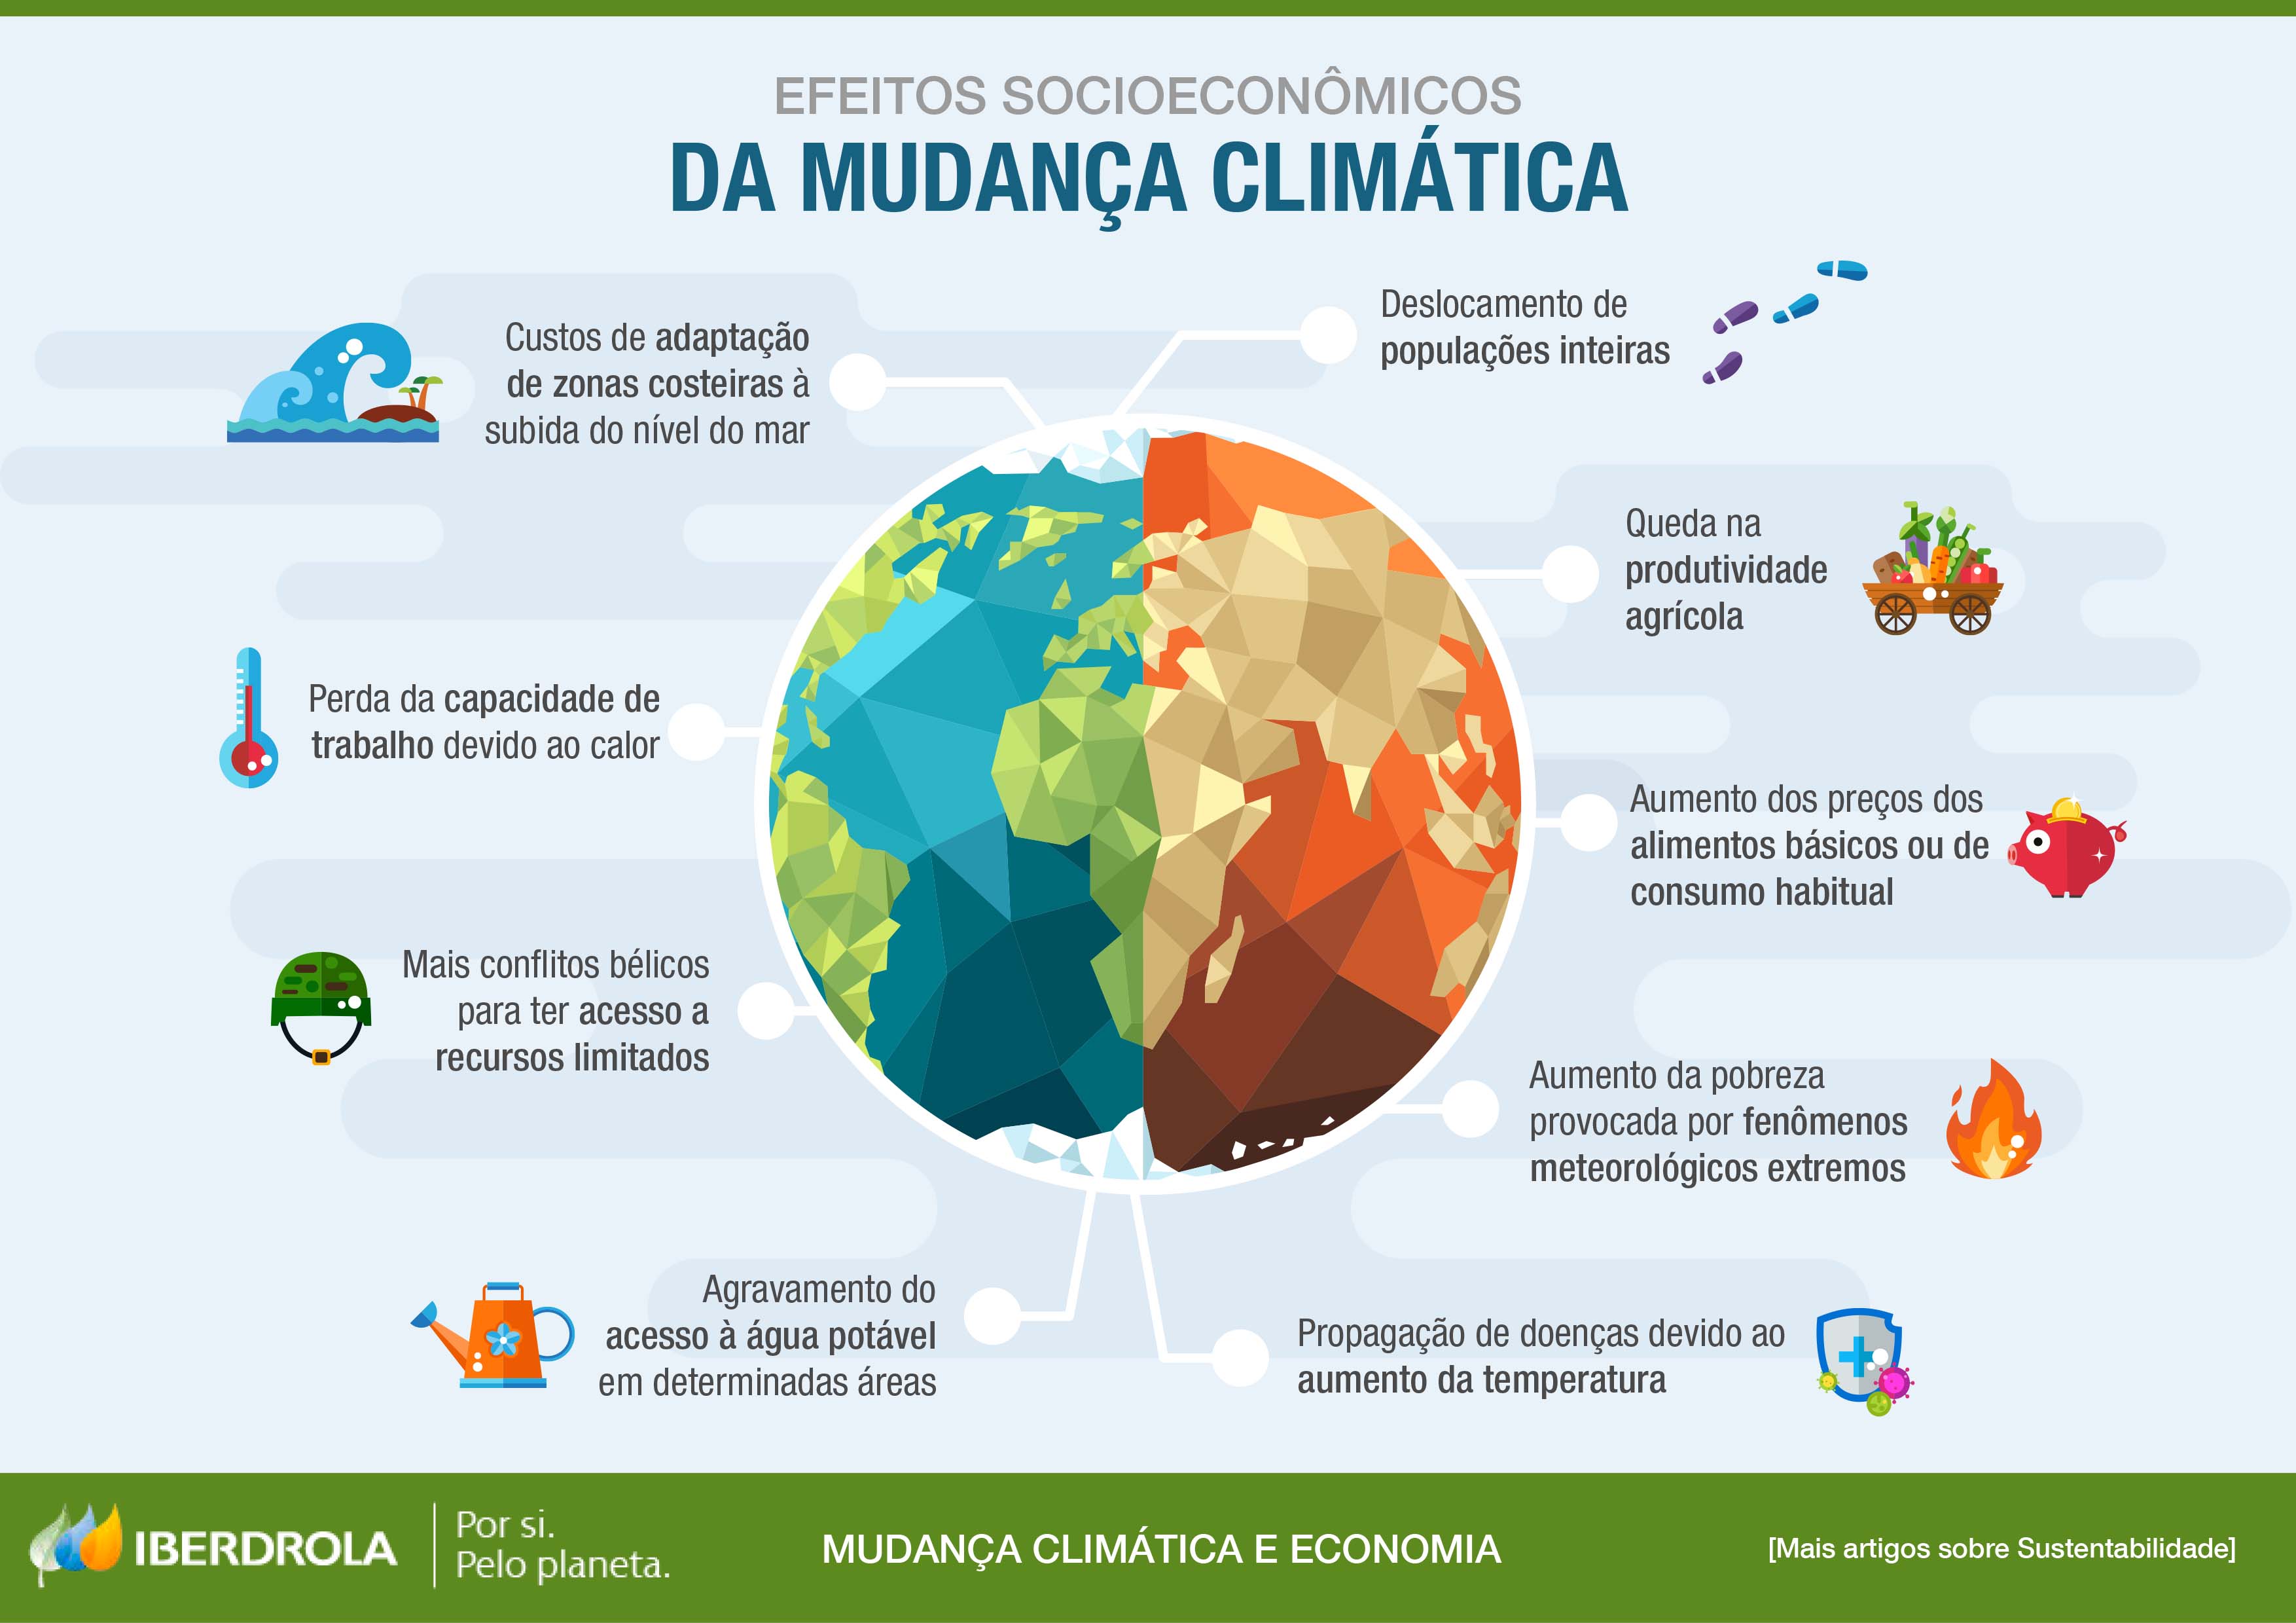 Efeitos socioeconômicos da mudança climática.